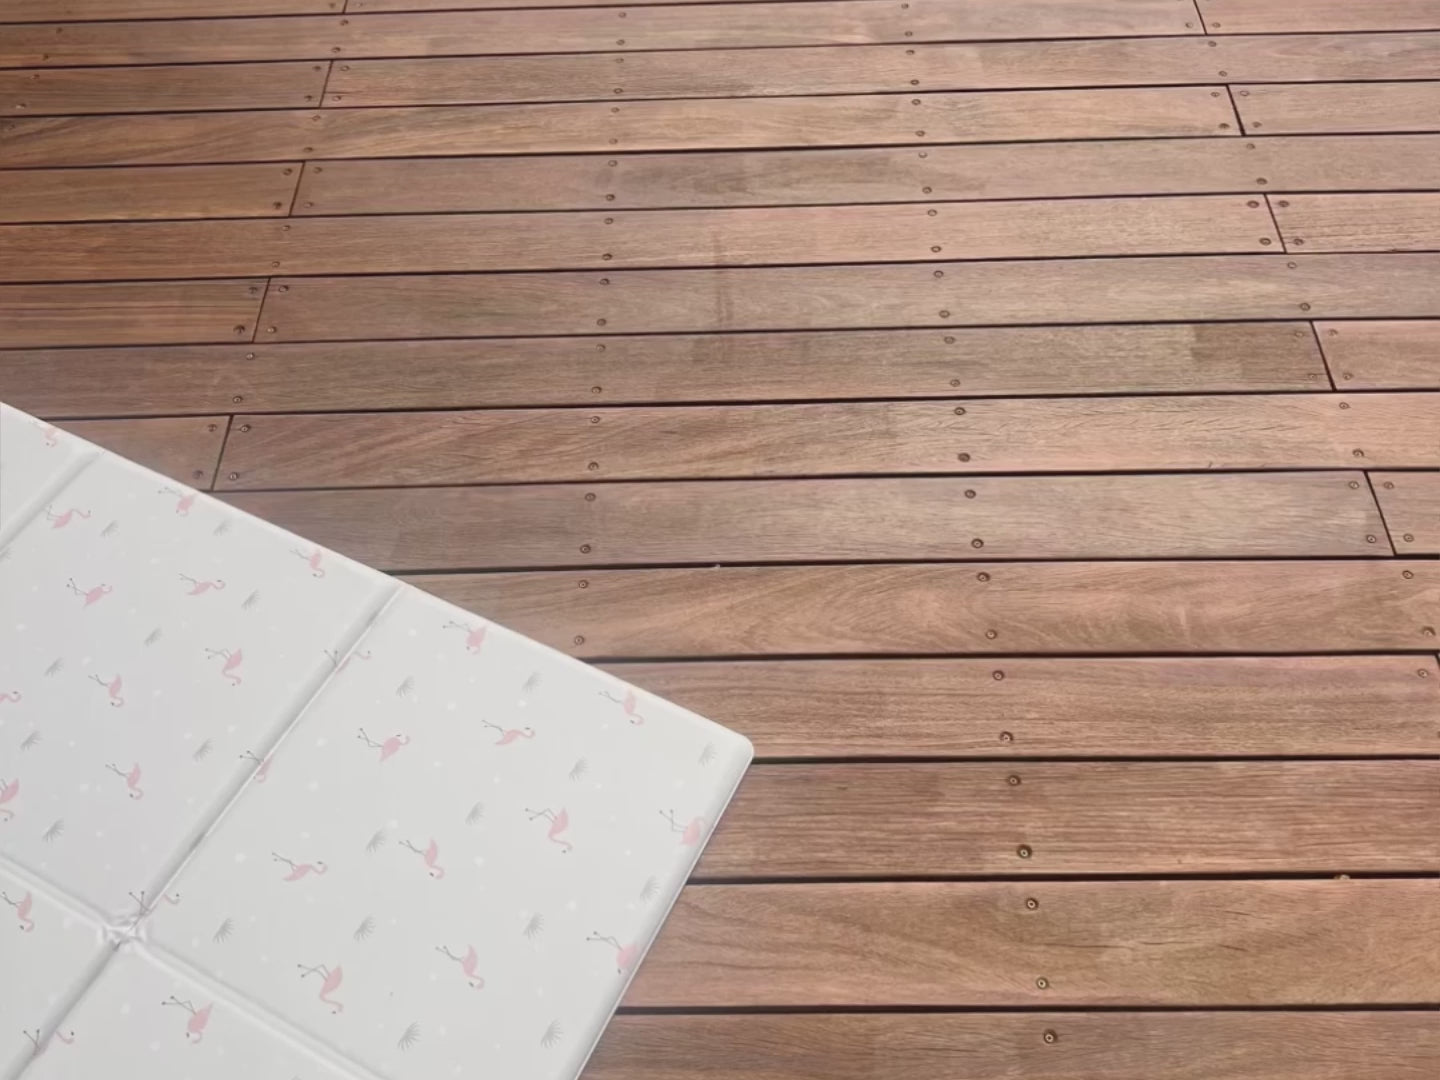 vidéo montrant comment plier le tapis de jeu tapilou